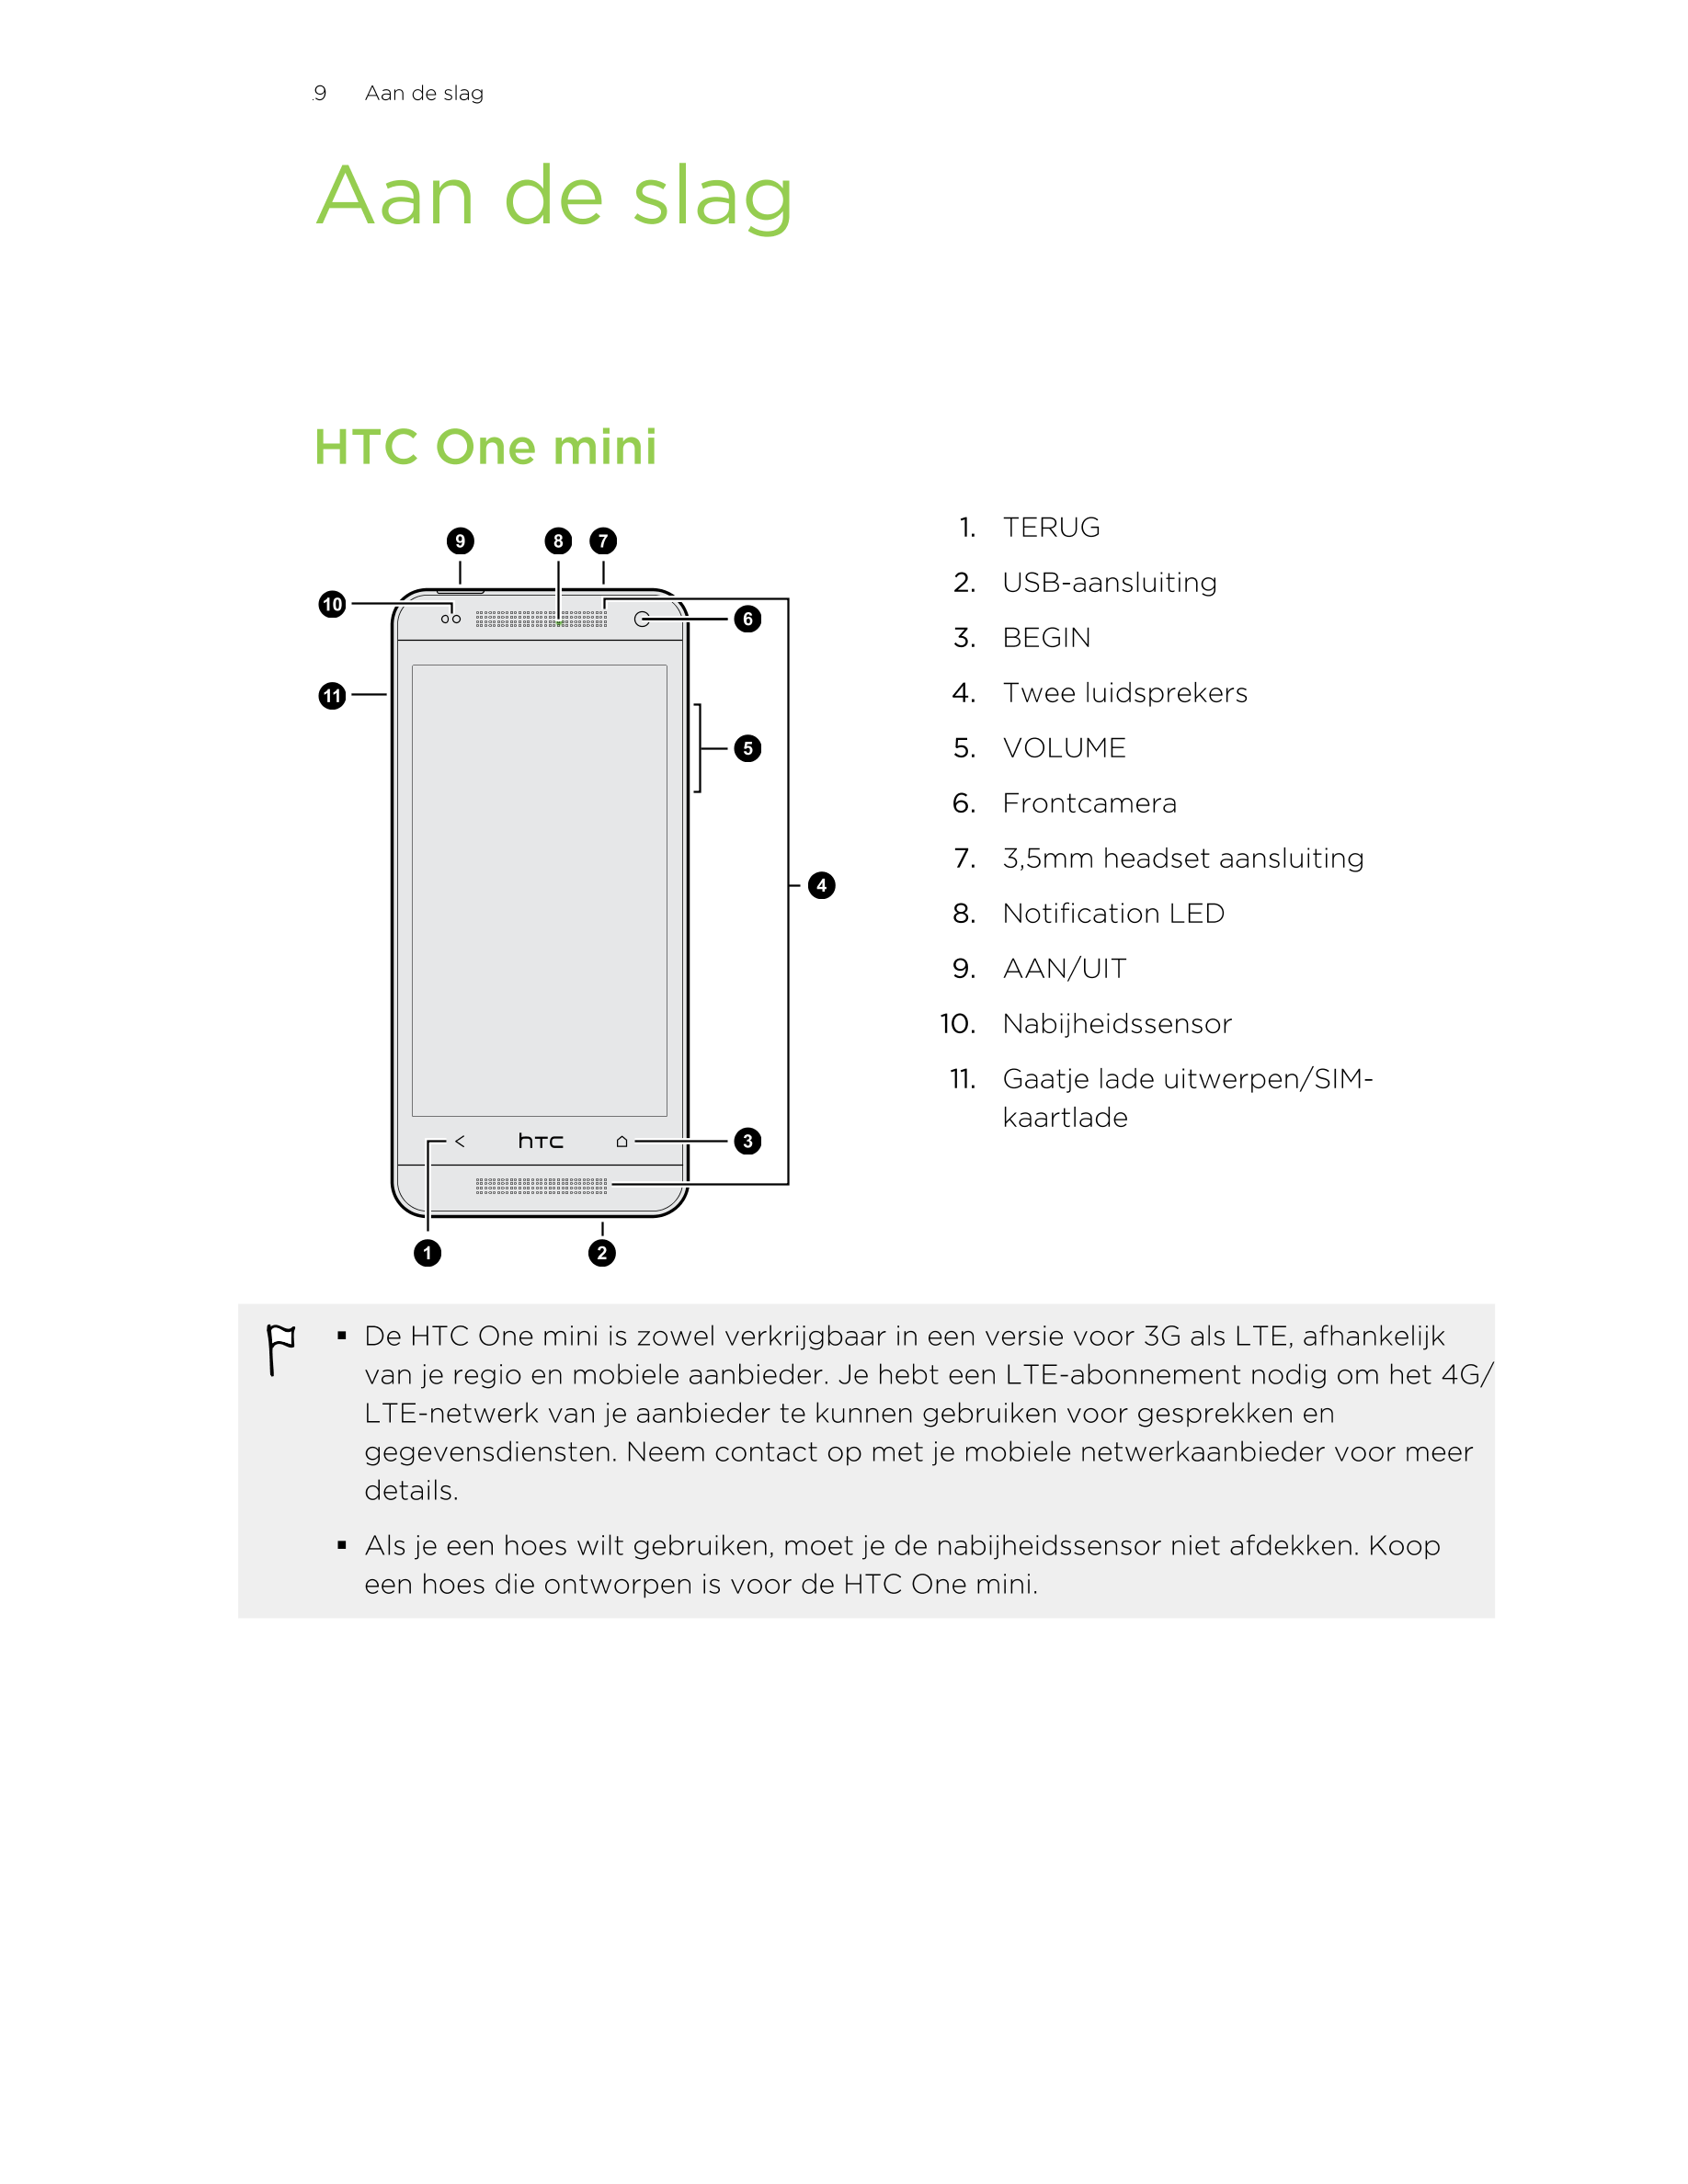 9      Aan de slag
Aan de slag
HTC One mini
1. TERUG
2. USB-aansluiting
3. BEGIN
4. Twee luidsprekers
5. VOLUME
6. Frontcamera
7